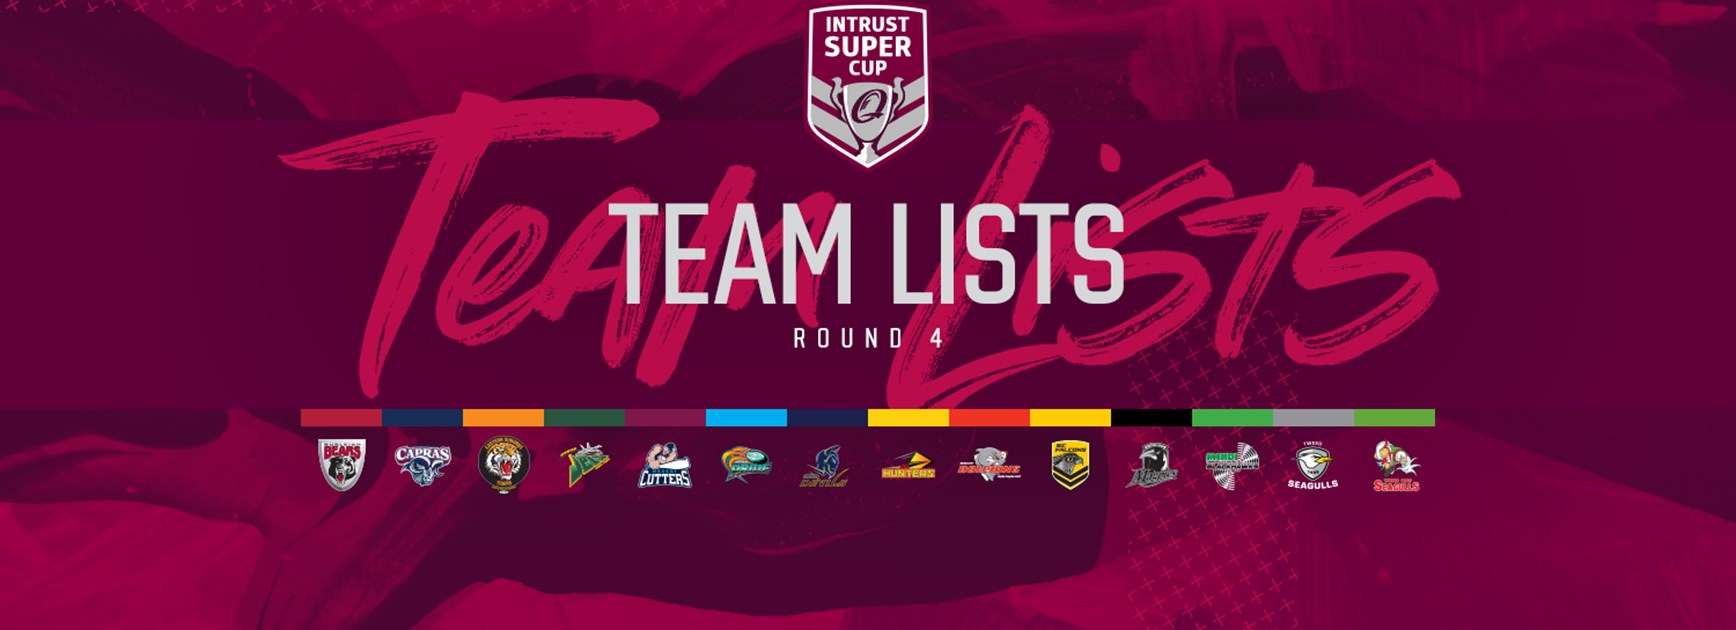 Round 4 Intrust Super Cup teams